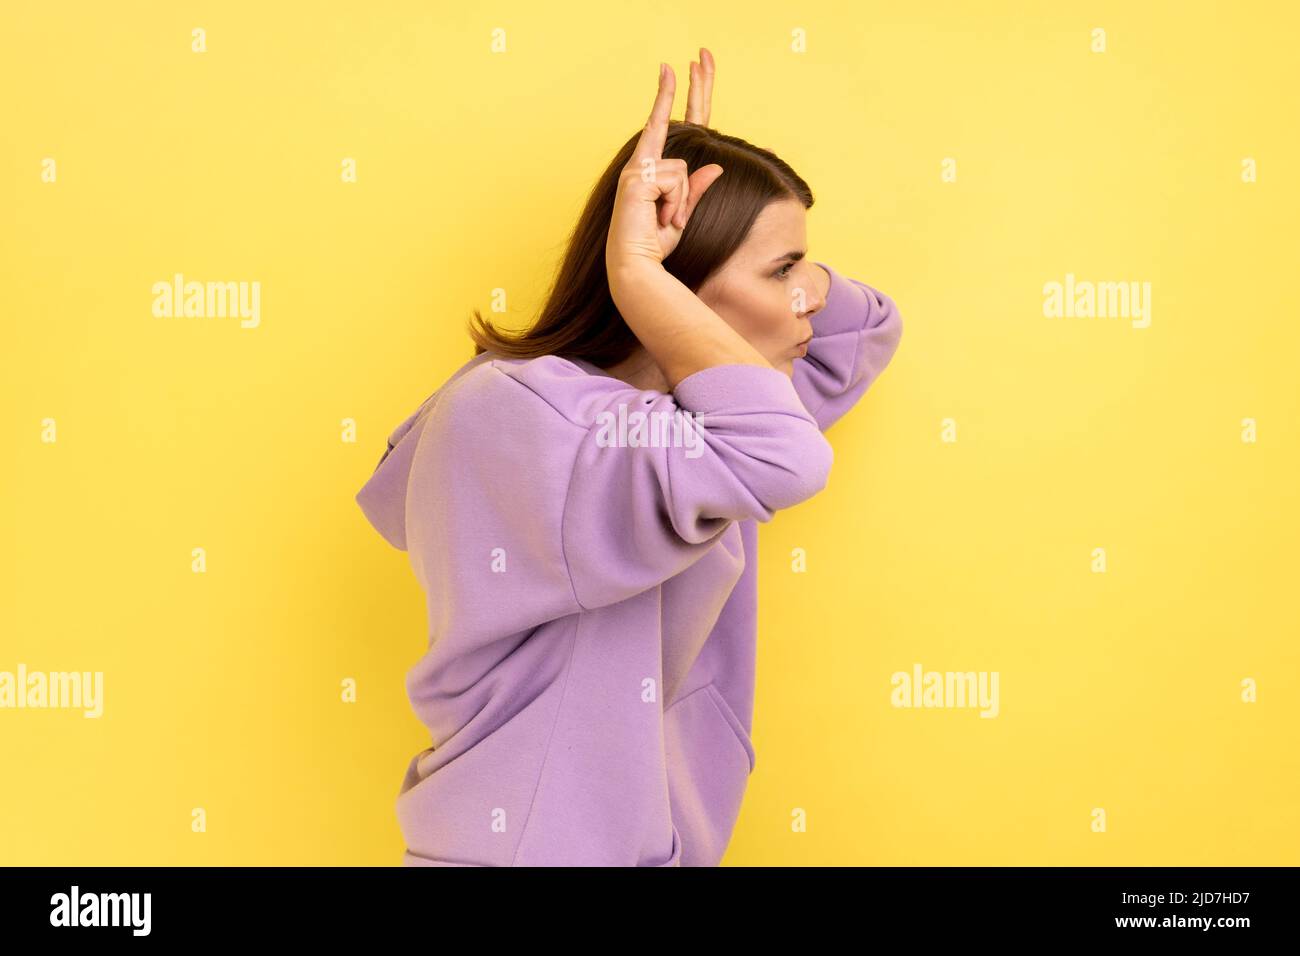 Seitenansicht einer aggressiven Frau, die die Finger über den Kopf hält und Hörner zeigt, arrogant und stur, angriffbereit, mit violettem Hoodie. Innenaufnahme des Studios isoliert auf gelbem Hintergrund. Stockfoto